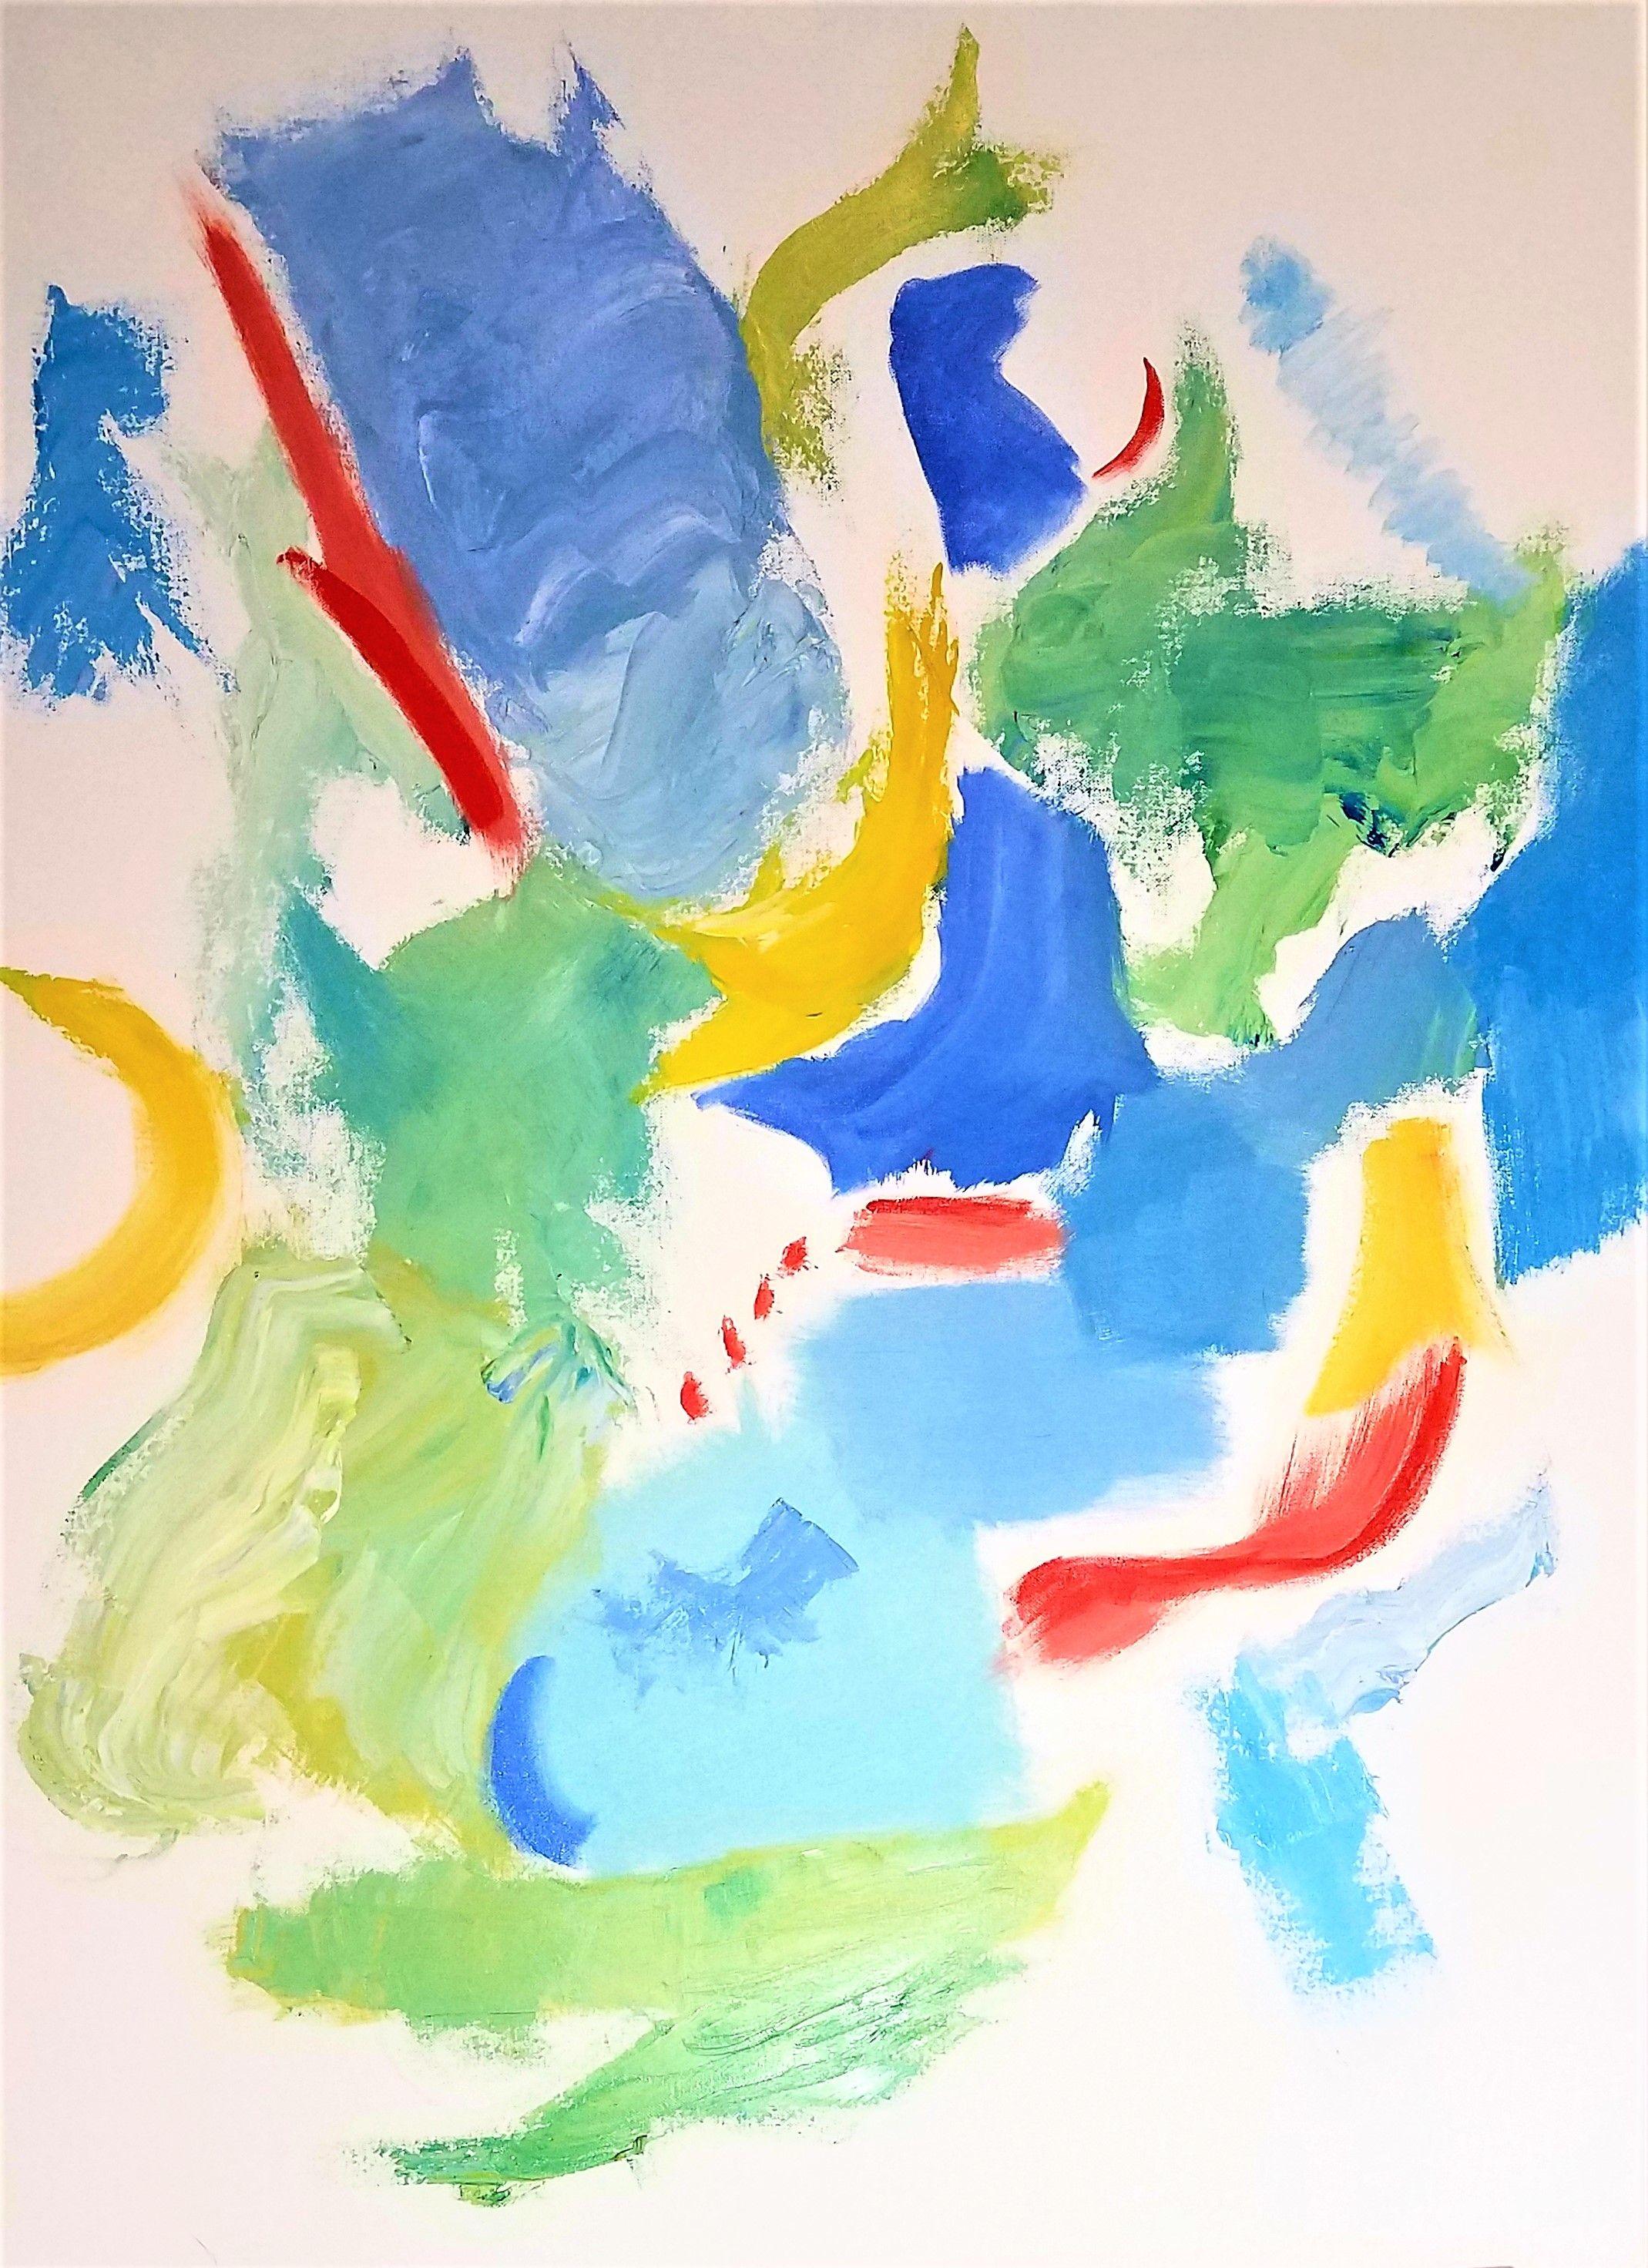 Abstract Painting Christine Frisbee - Jouer aux couleurs 1, peinture, huile sur toile